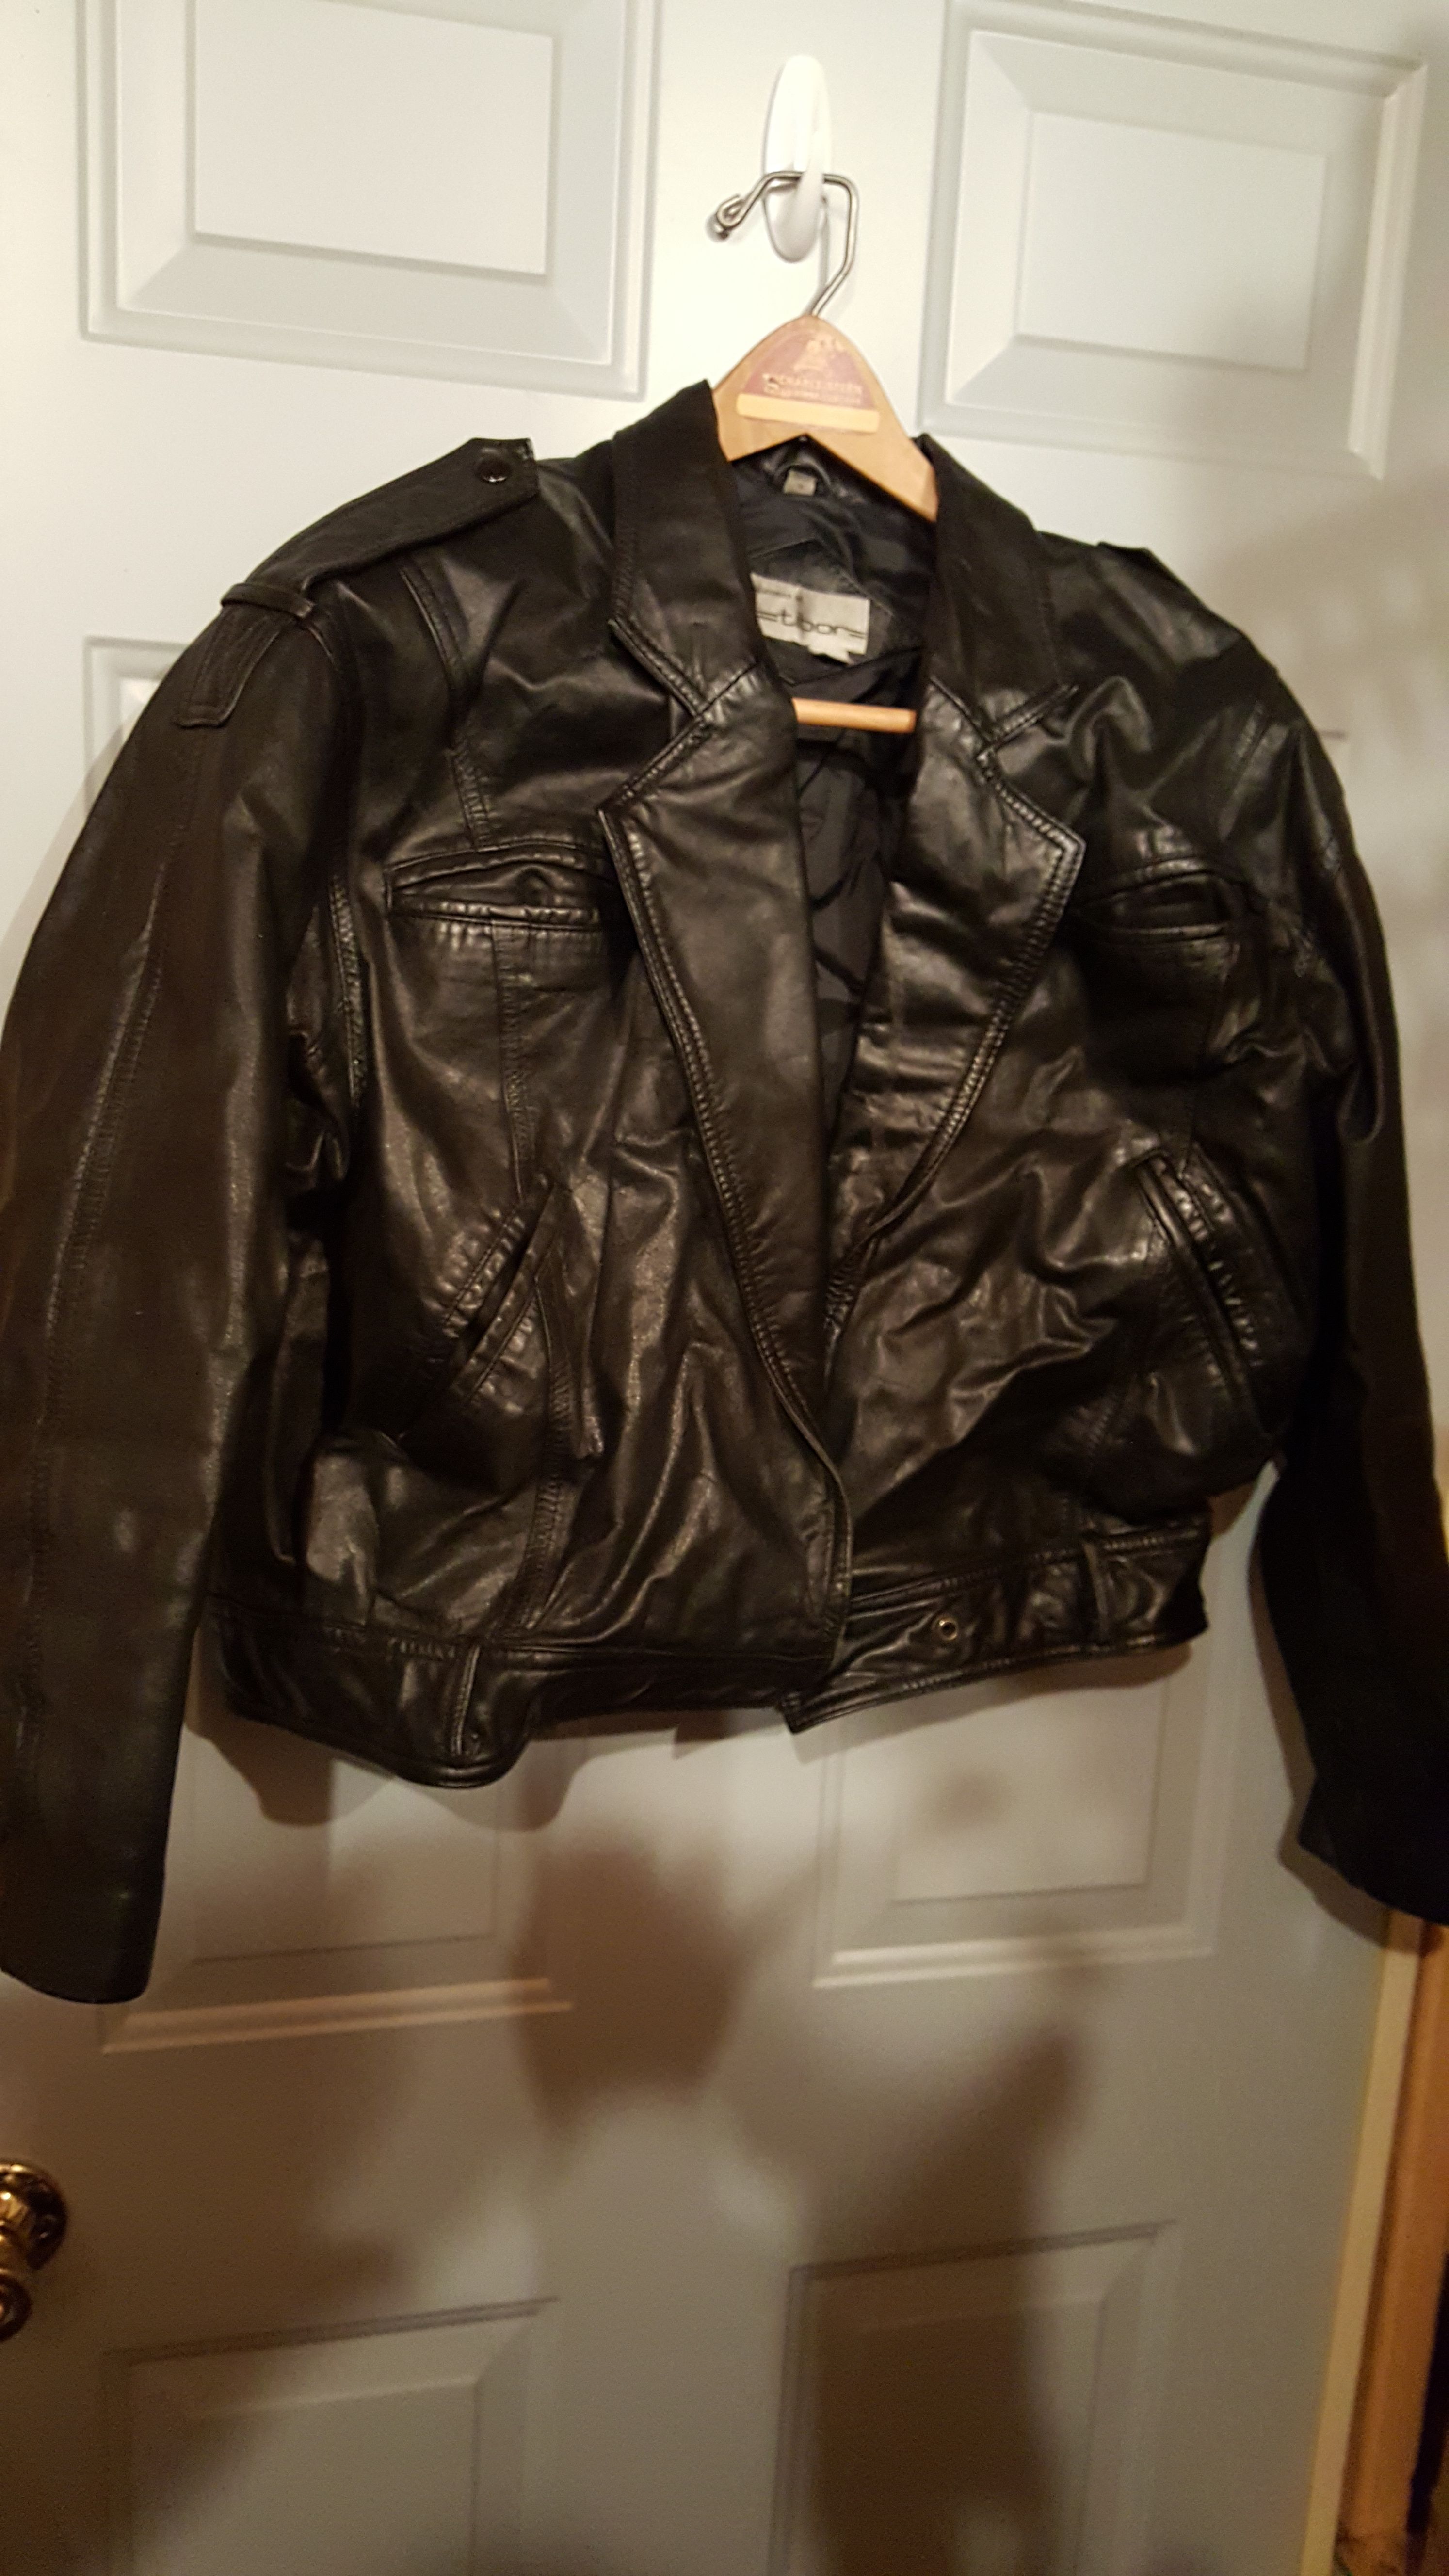 Ladies black leather jacket size medium